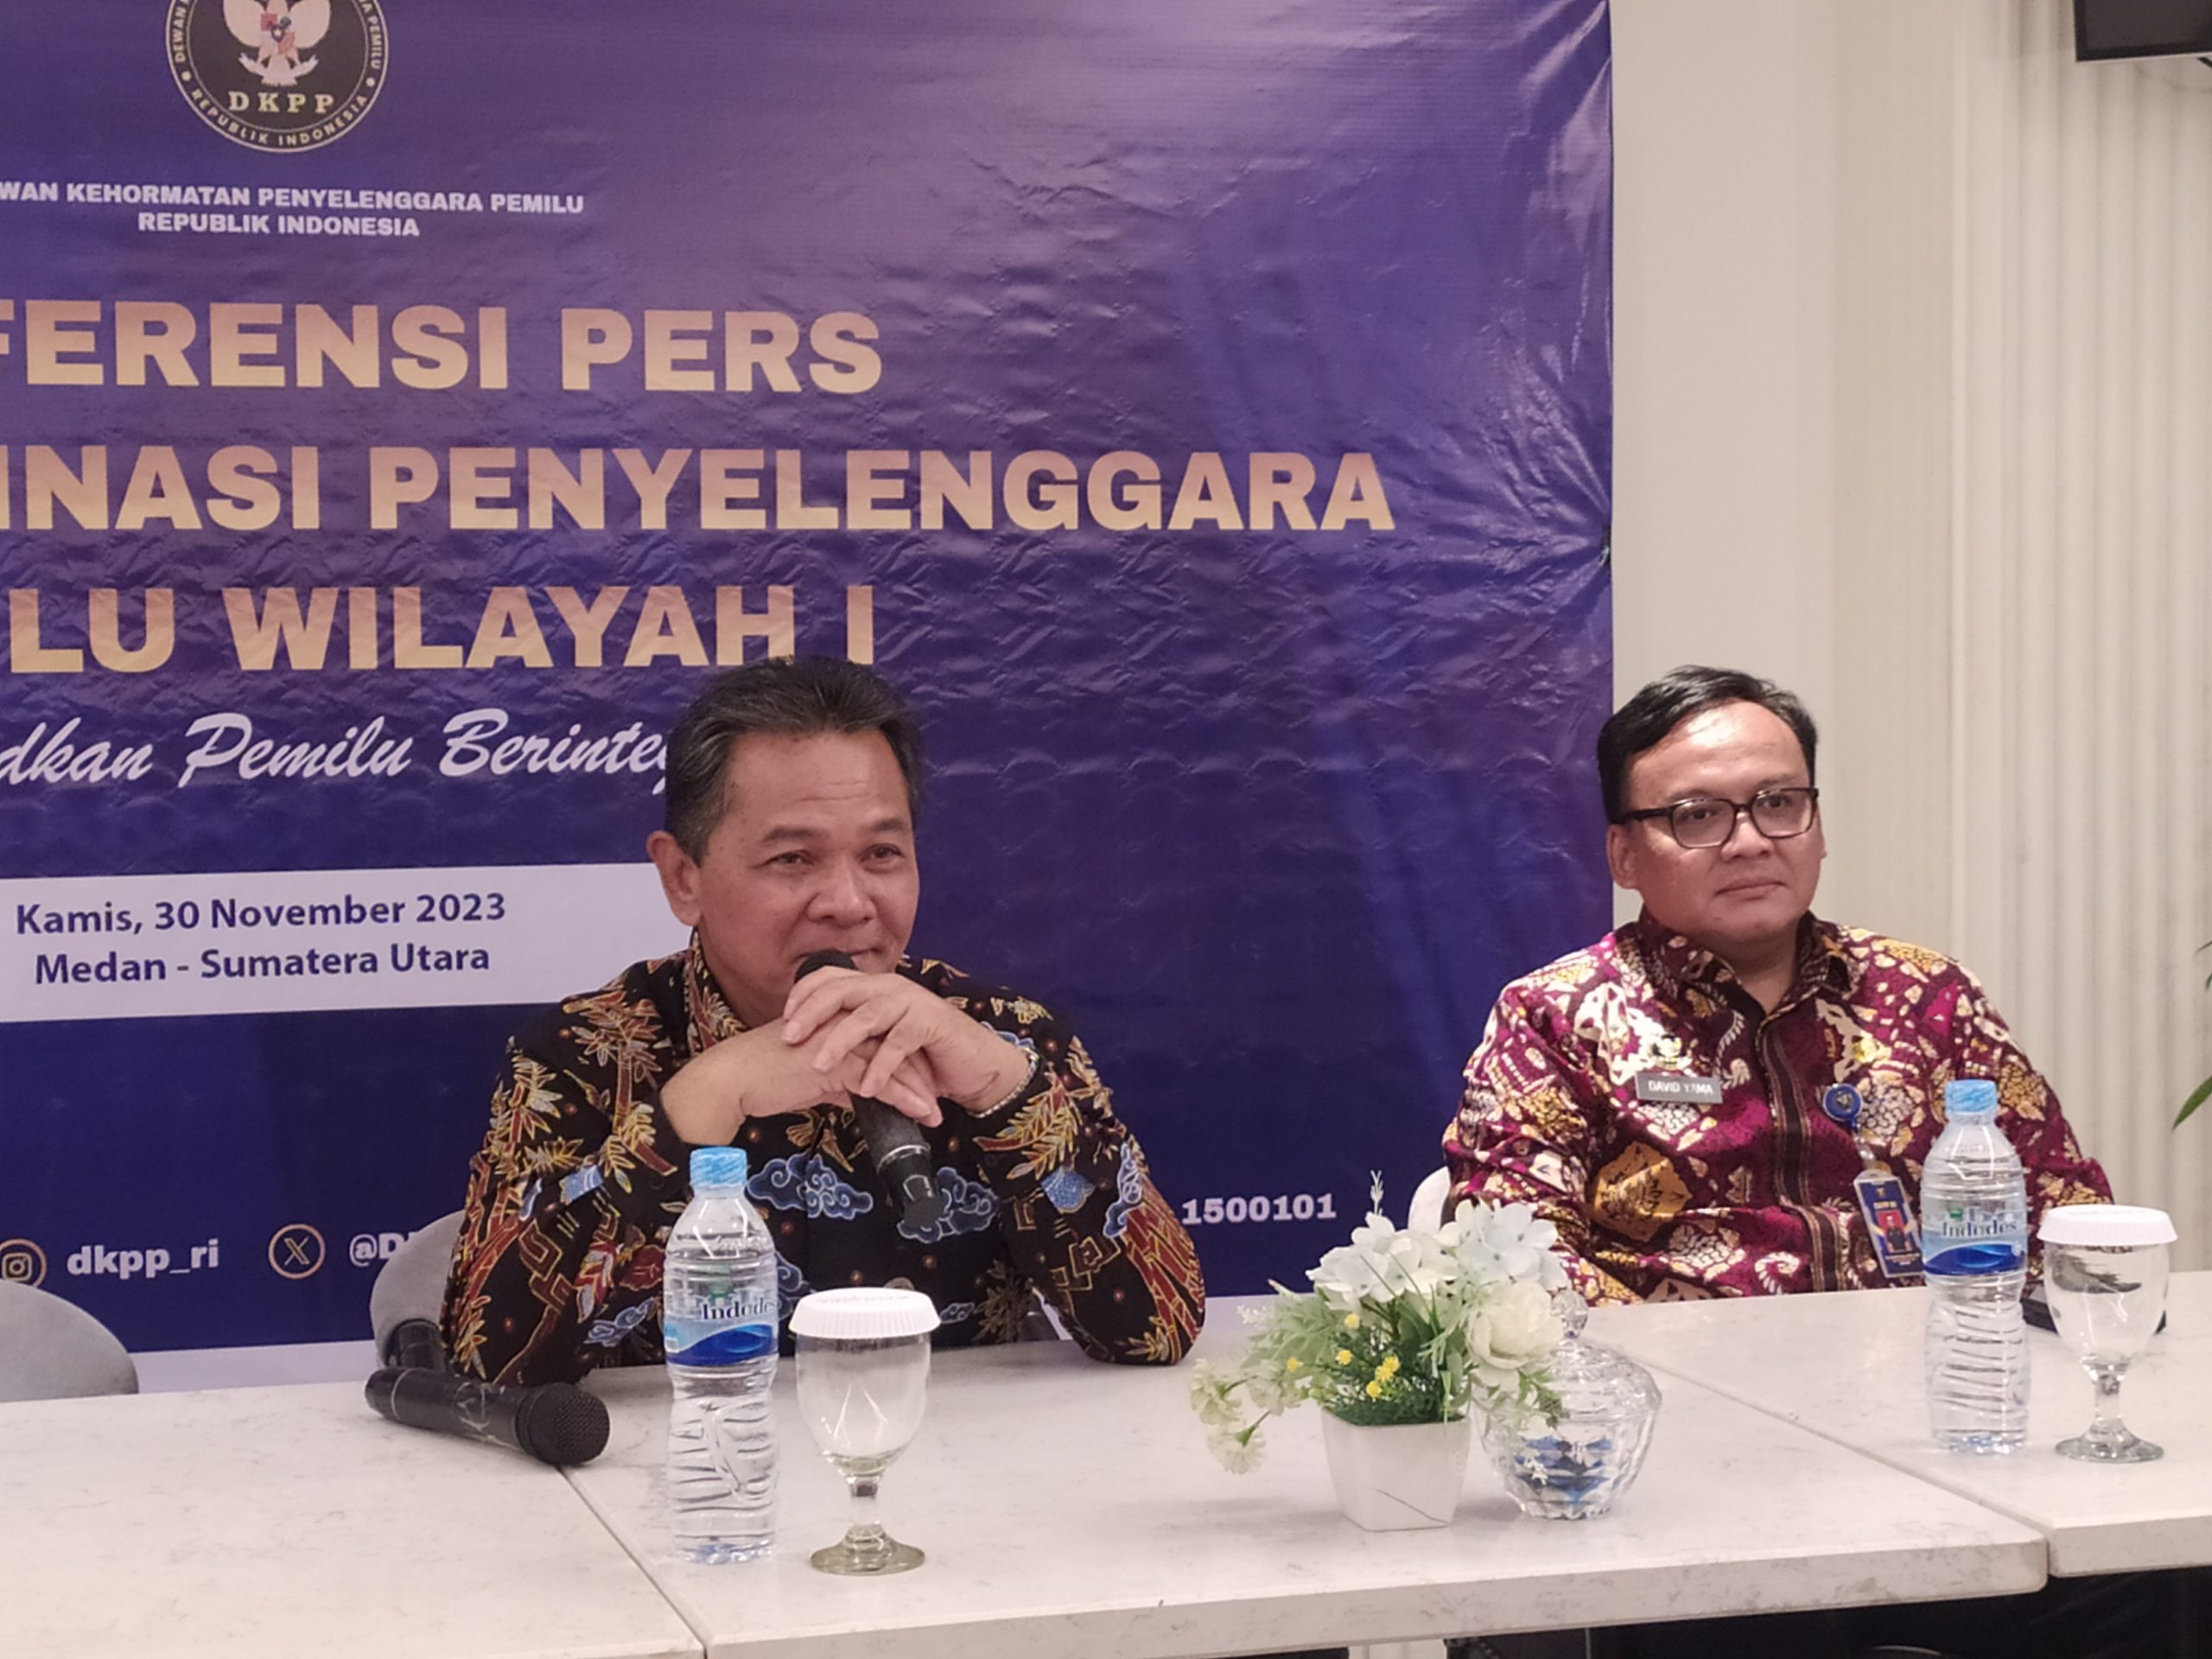 Komisioner Bawaslu Medan Terjaring OTT Bakal Dipecat, DKPP: Melanggar Hukum Pasti Melanggar Etik, Deempatbelas.com